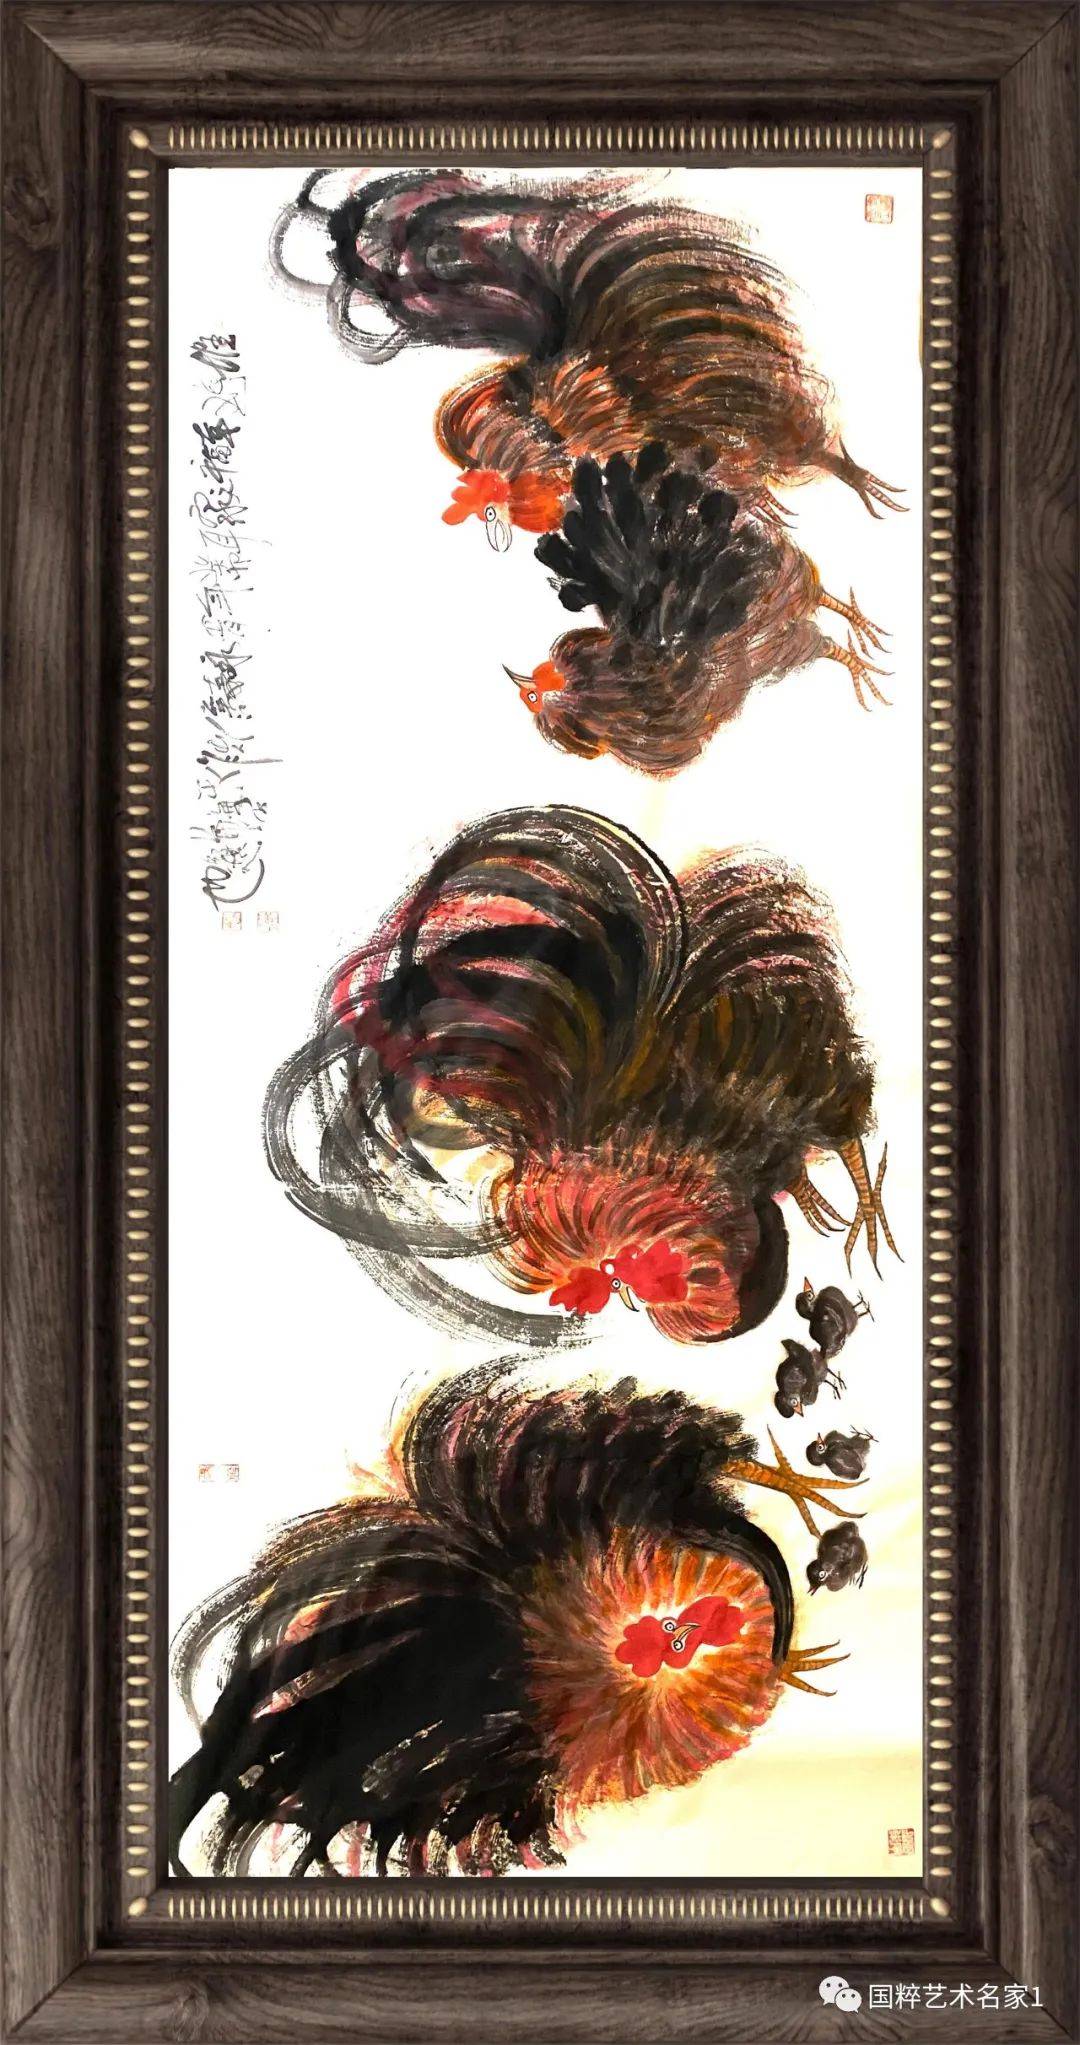 欣赏国画家朱祖国《鸡一族》故事系列绘画作品